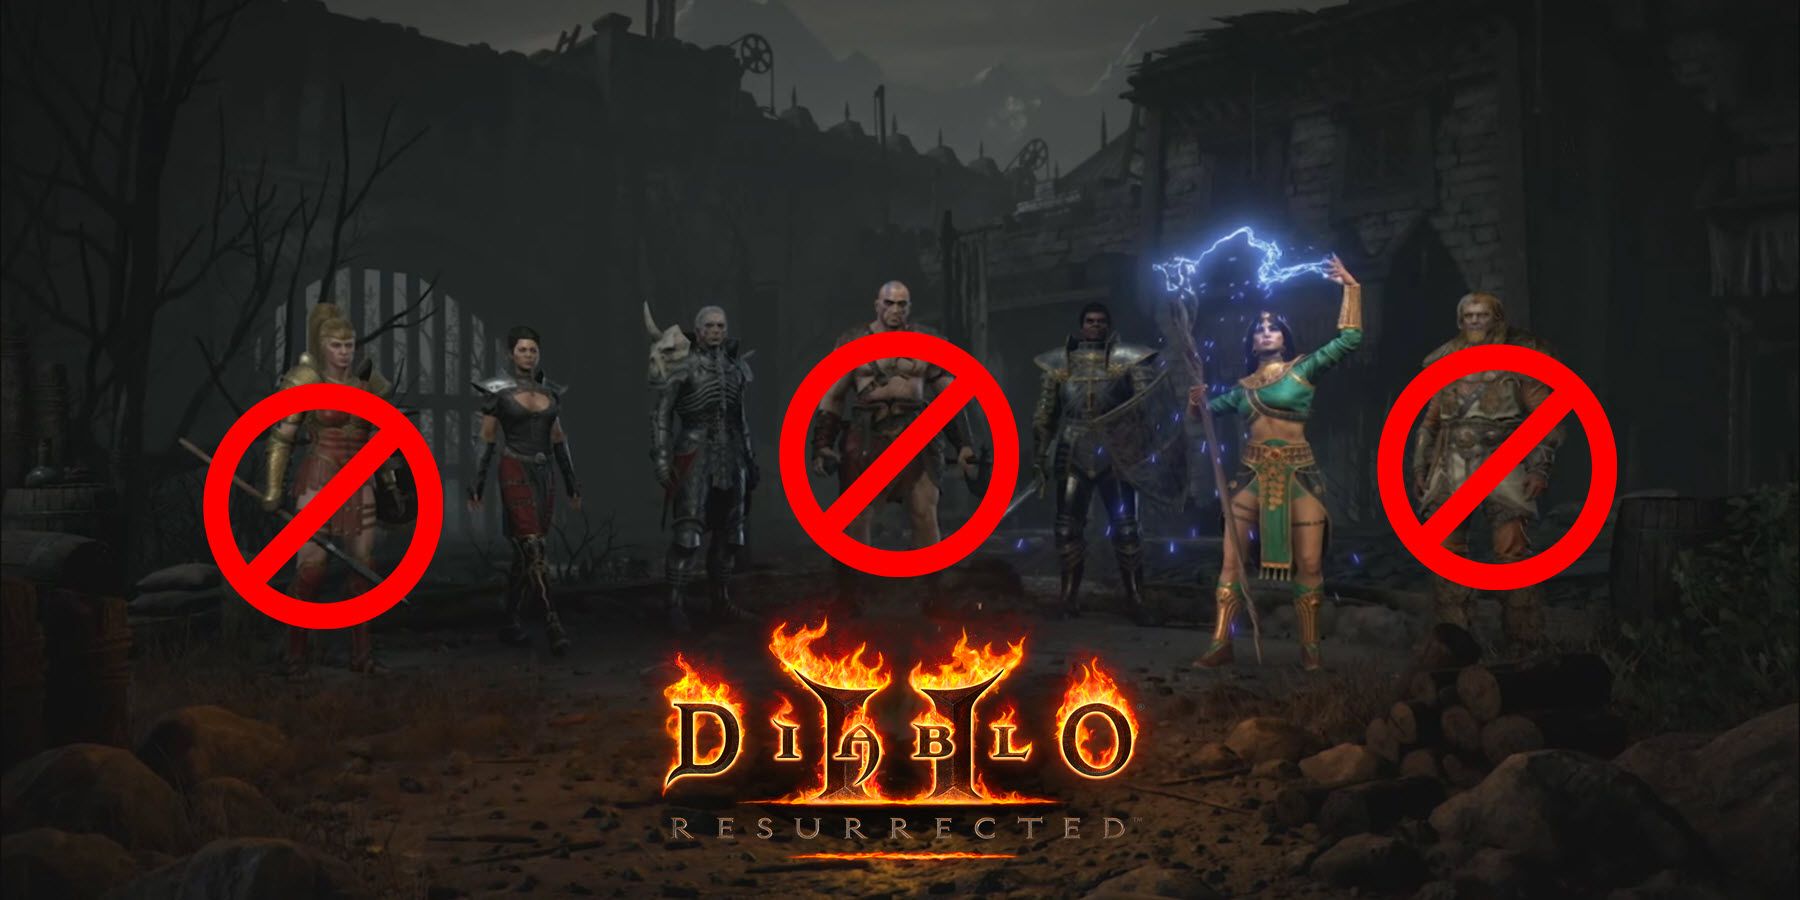 Diablo 2: Opgestane spelers worden uit hun personages vergrendeld